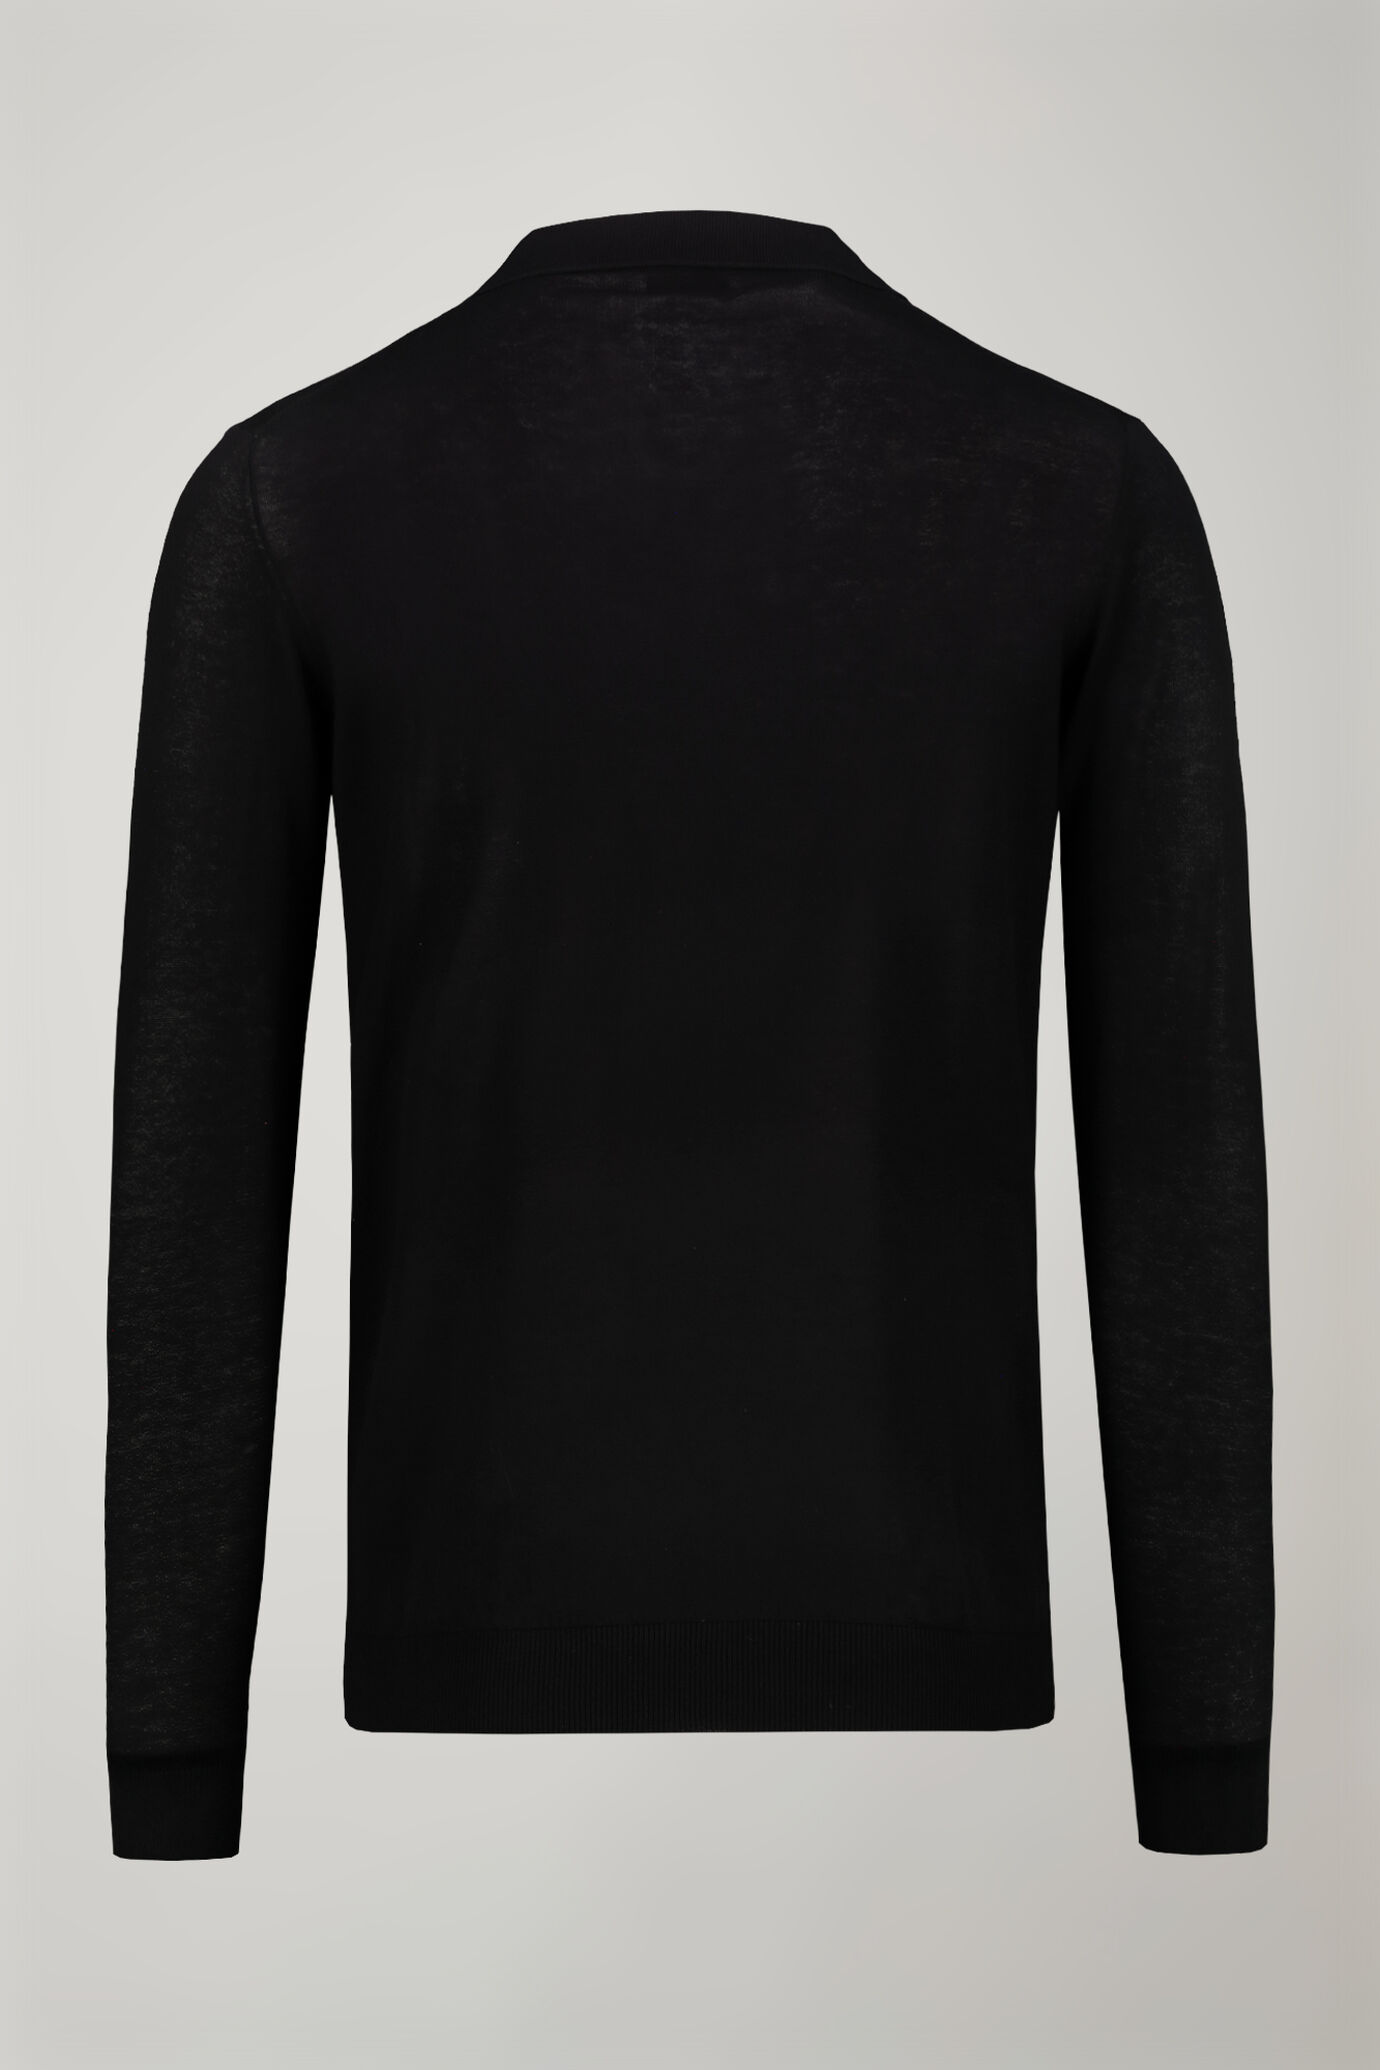 Herren-Poloshirt mit V-Ausschnitt aus 100 % Baumwollstrick und langen Ärmeln in normaler Passform image number 5